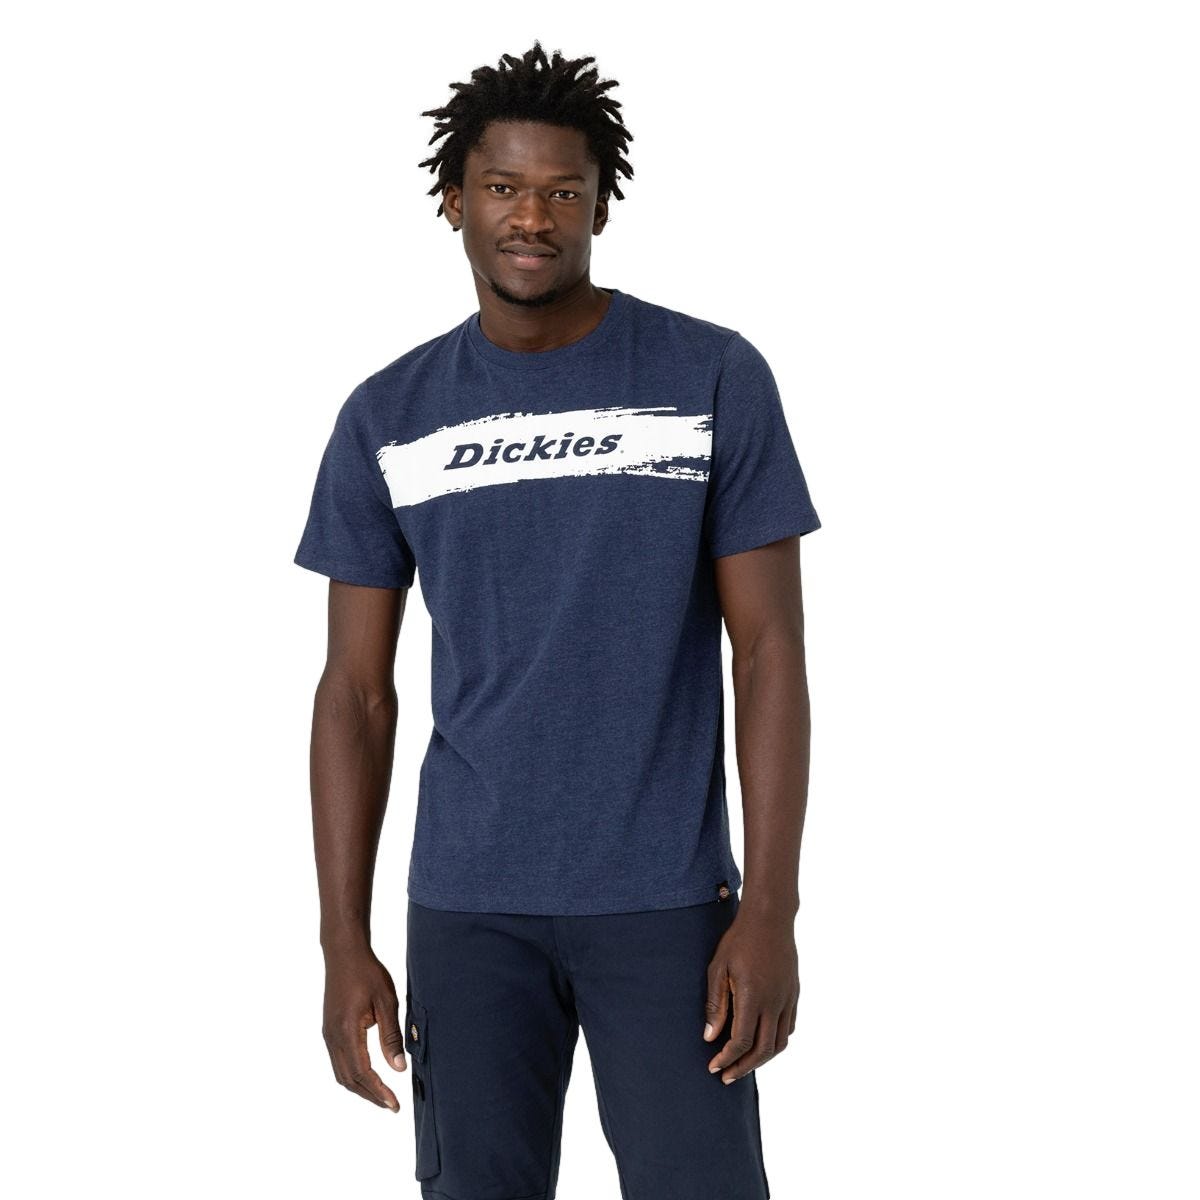 T-shirt à manches courtes pour homme Stanton bleu marine - Dickies - Taille 3XL 0